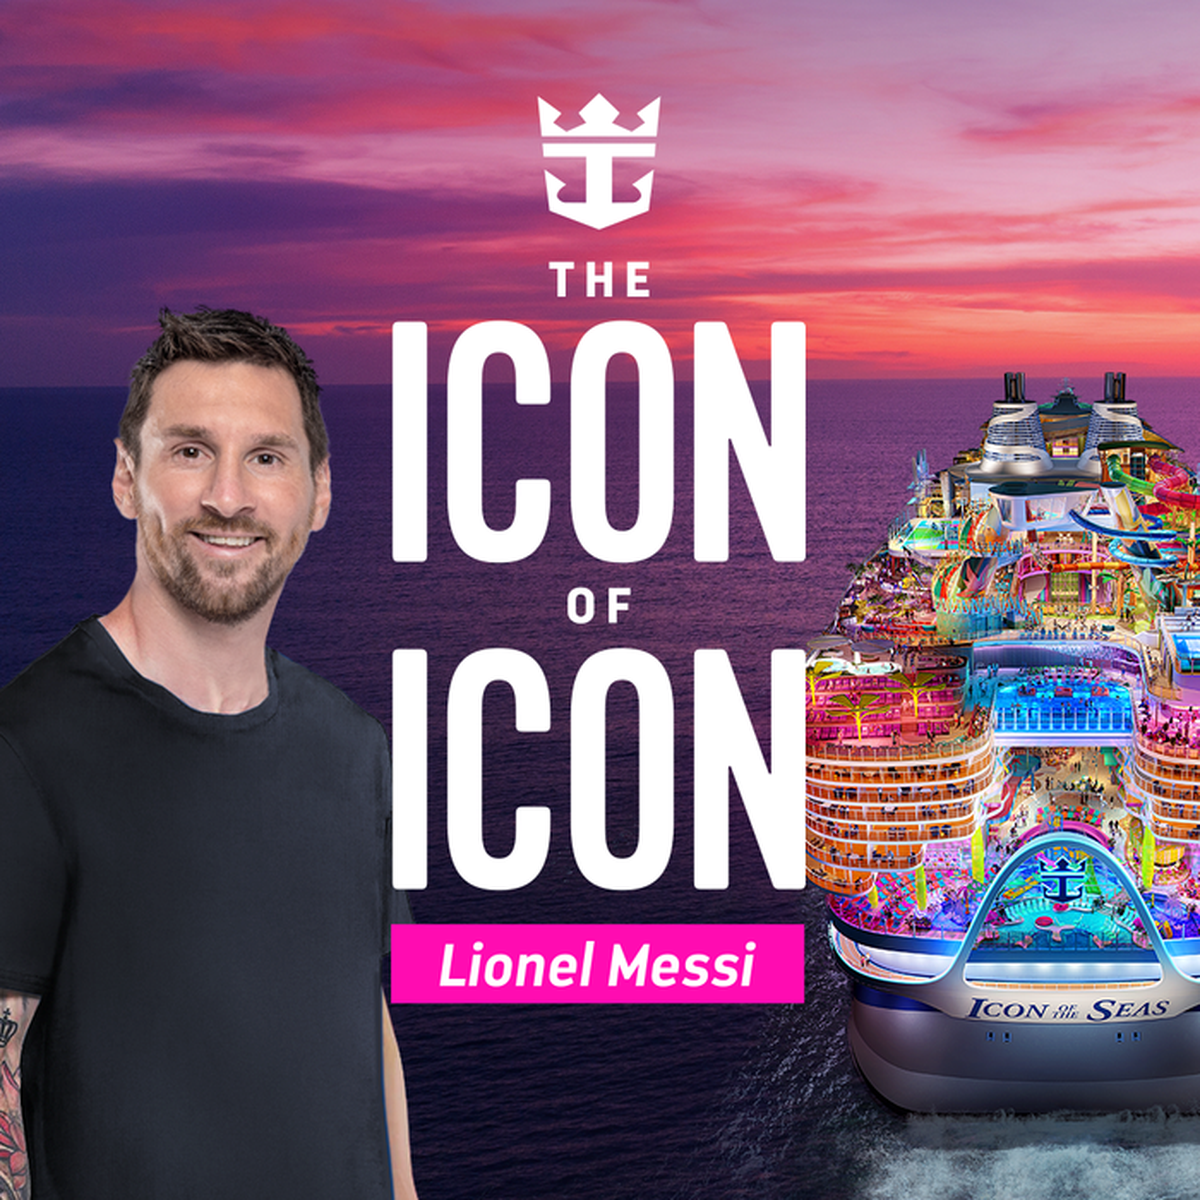 Royal Caribbean anunció que el martes 23 de enero Lionel Messi se convertirá en el 